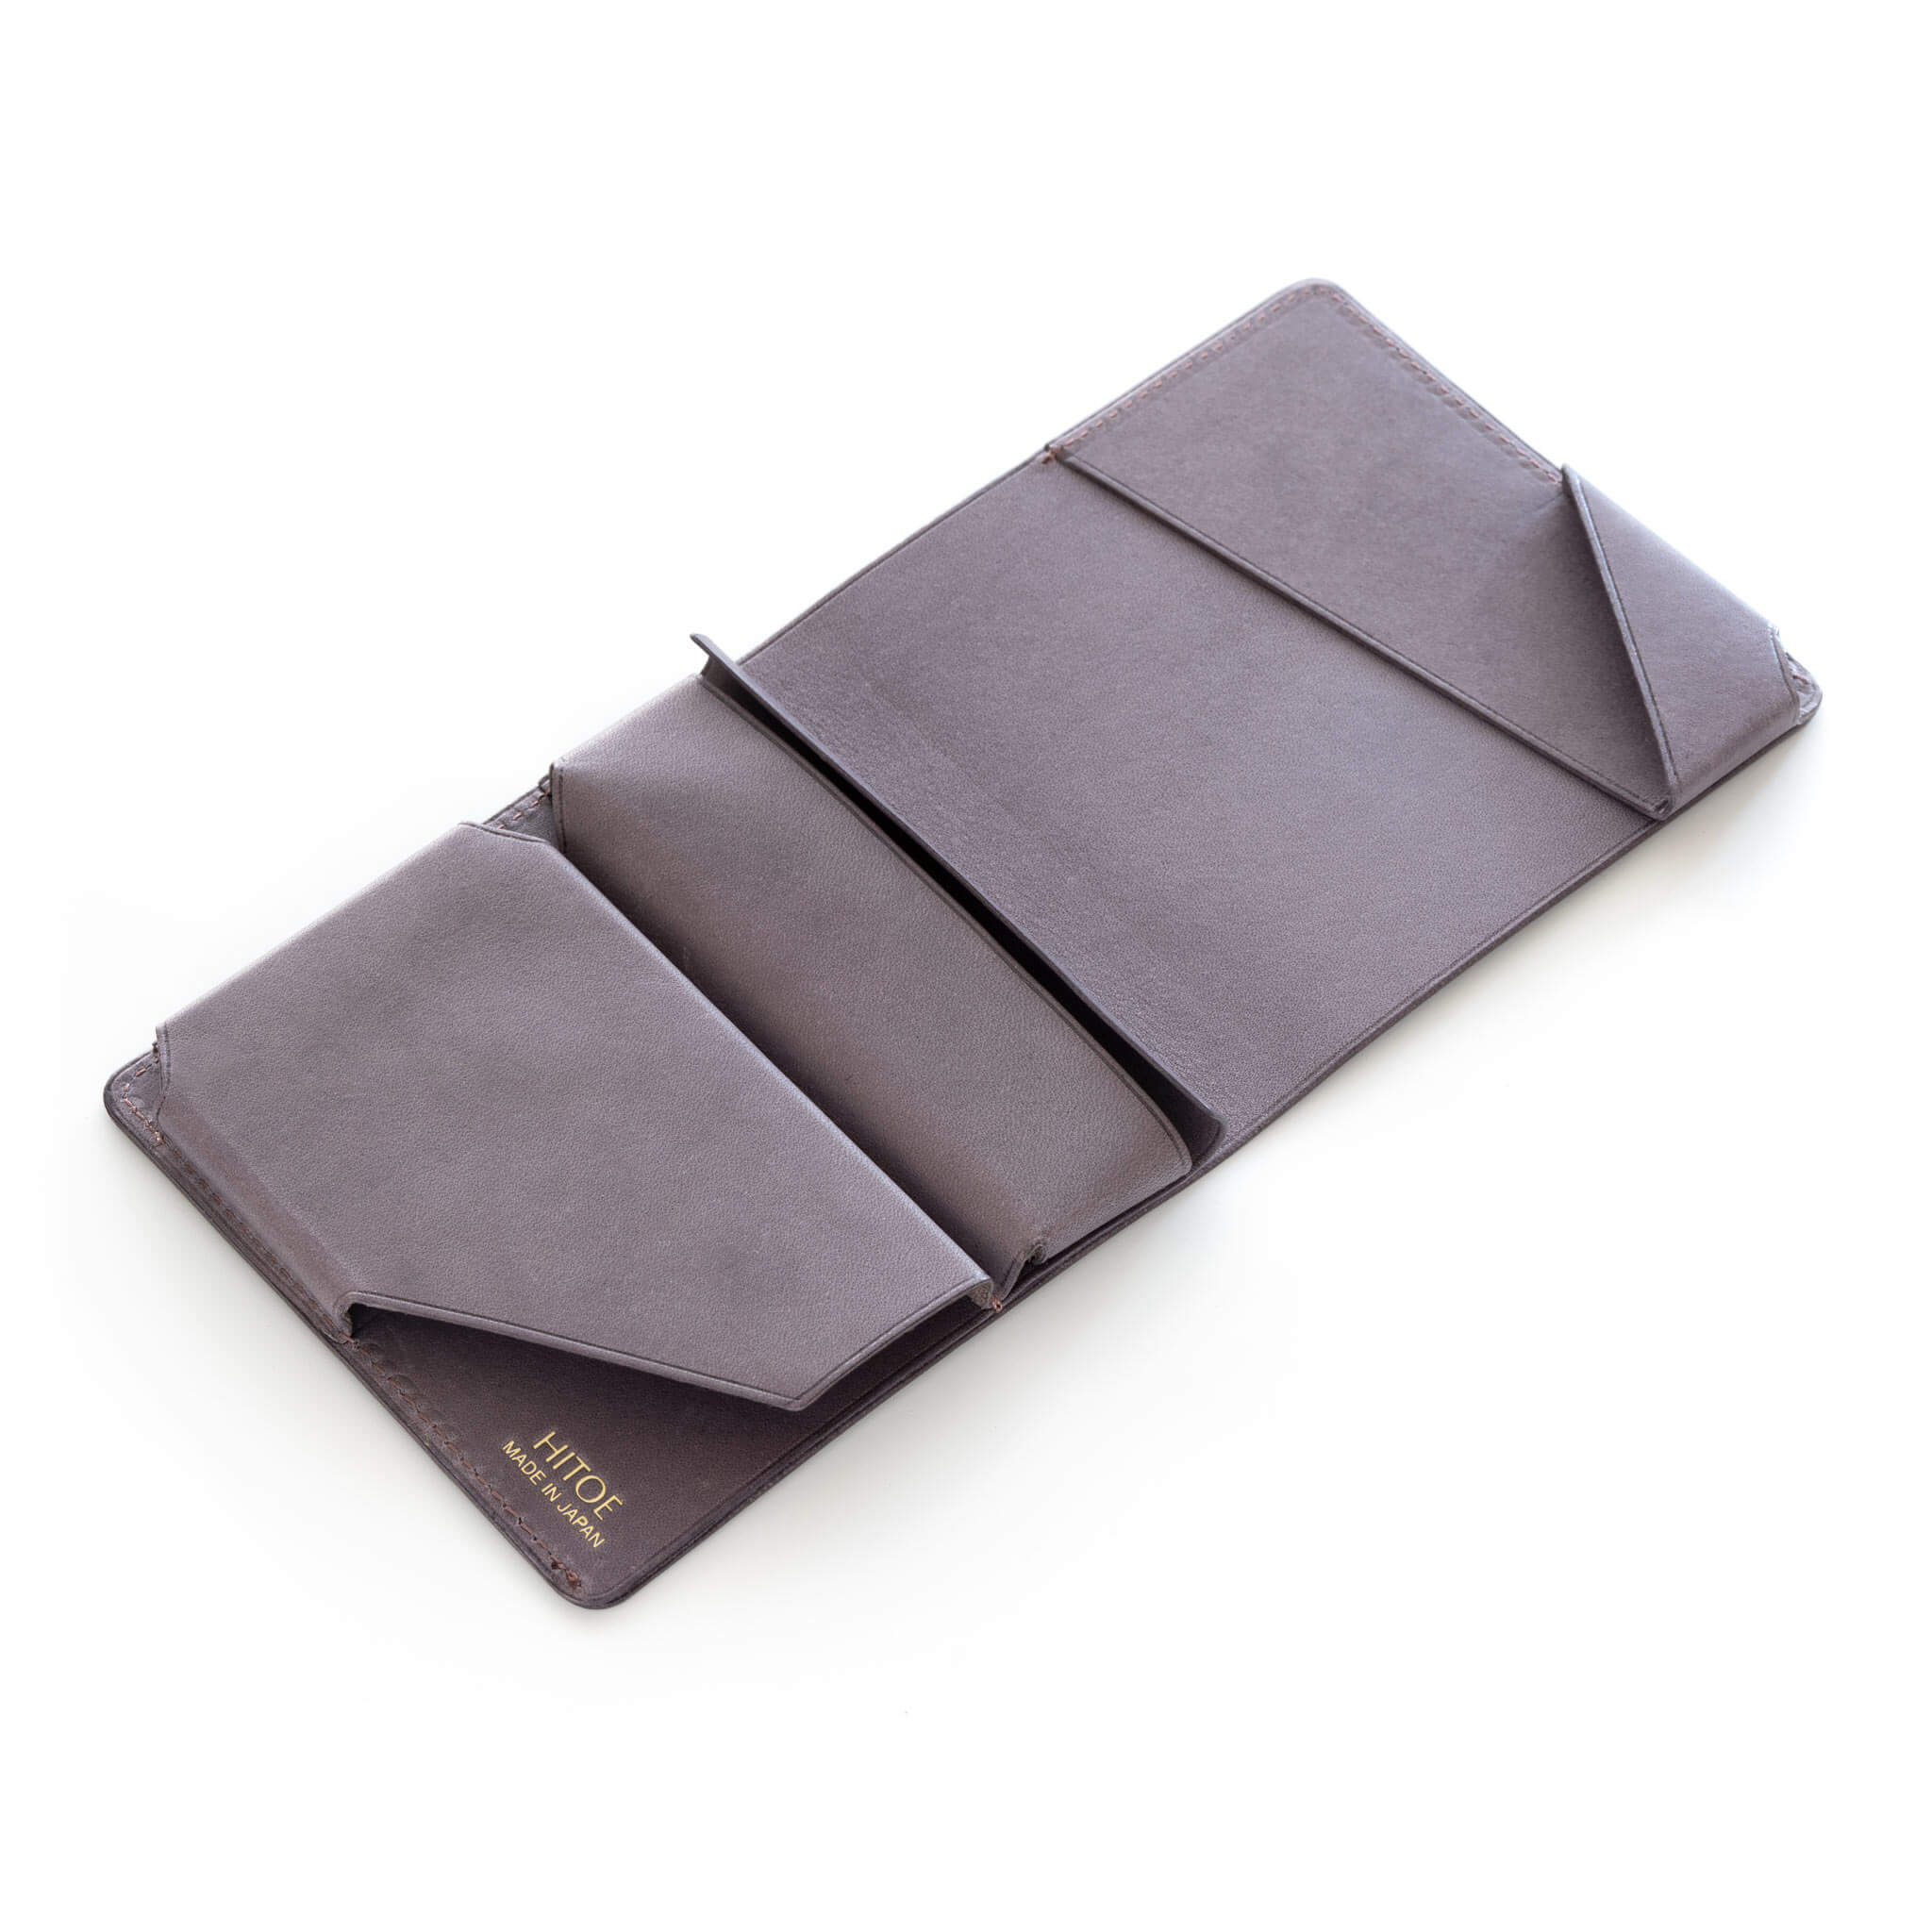 世界のデザイン賞11冠 小さな薄い財布 Hitoe® Fold Aria - Foschia - – Syrinx